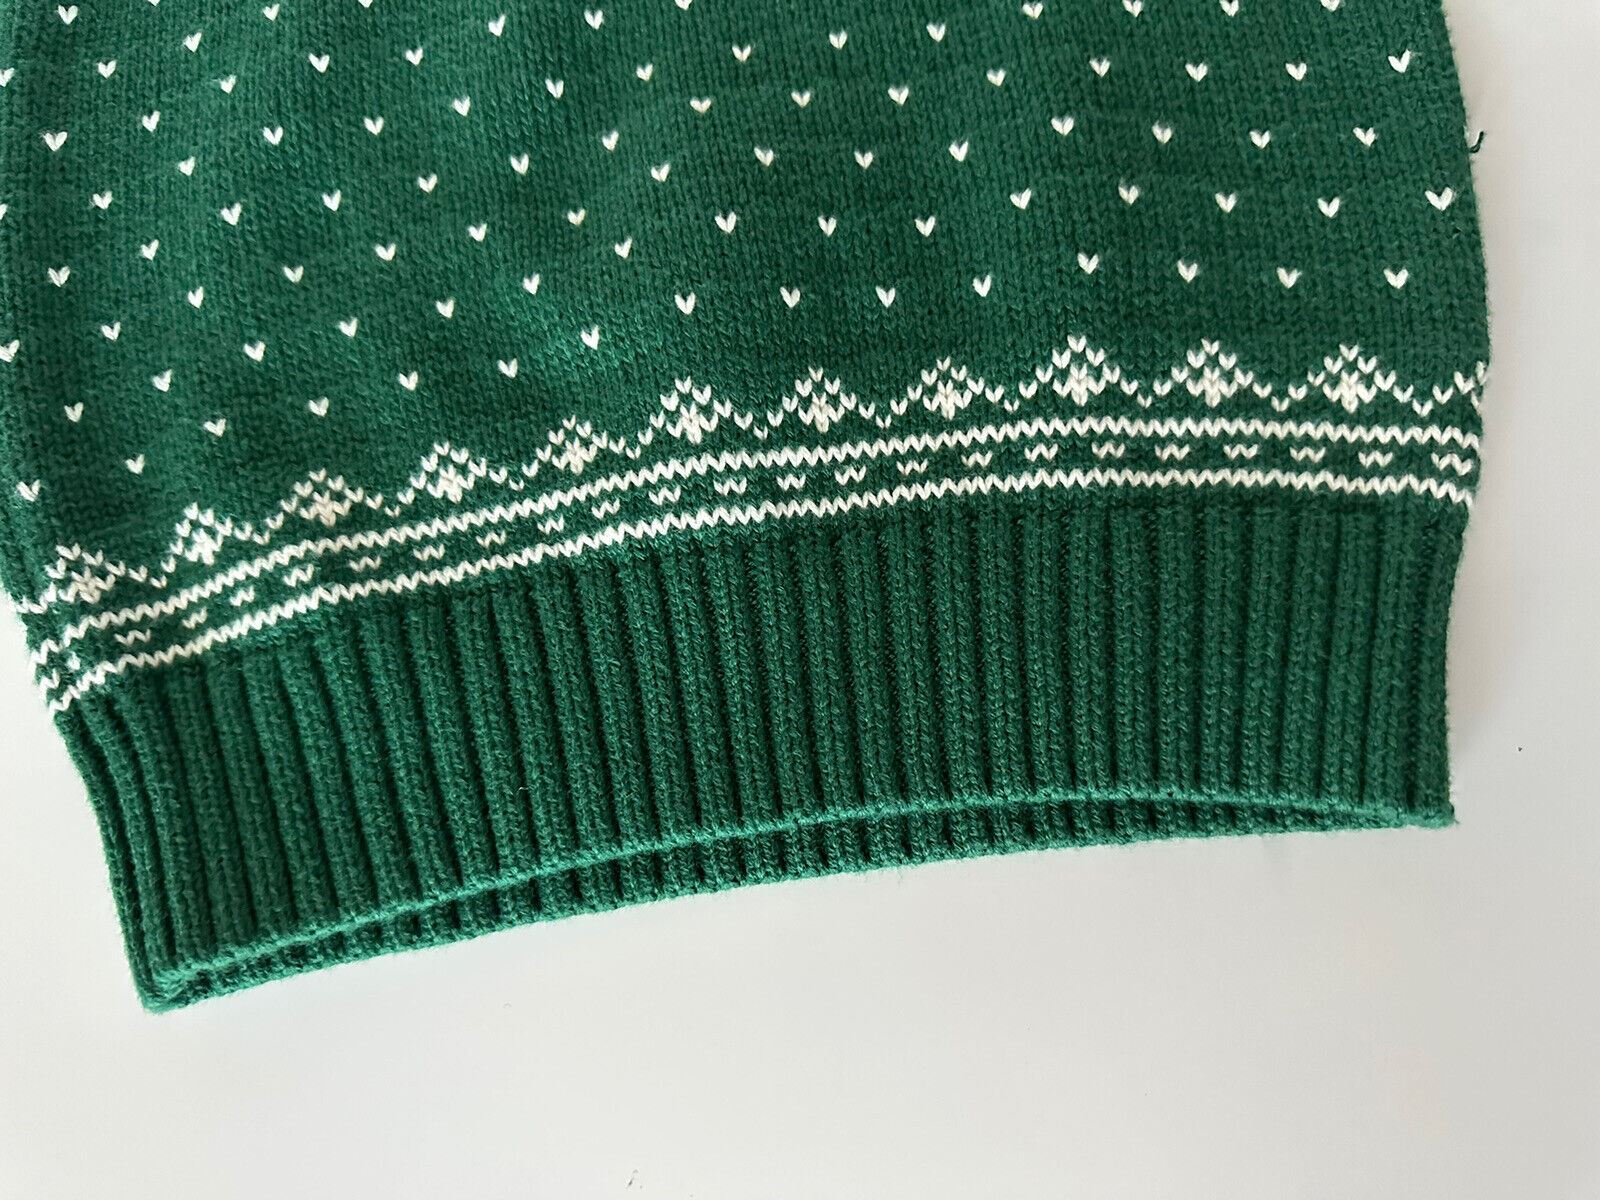 Зеленый хлопково-шерстяной свитер для мальчиков NWT Polo Ralph Lauren, размер 6